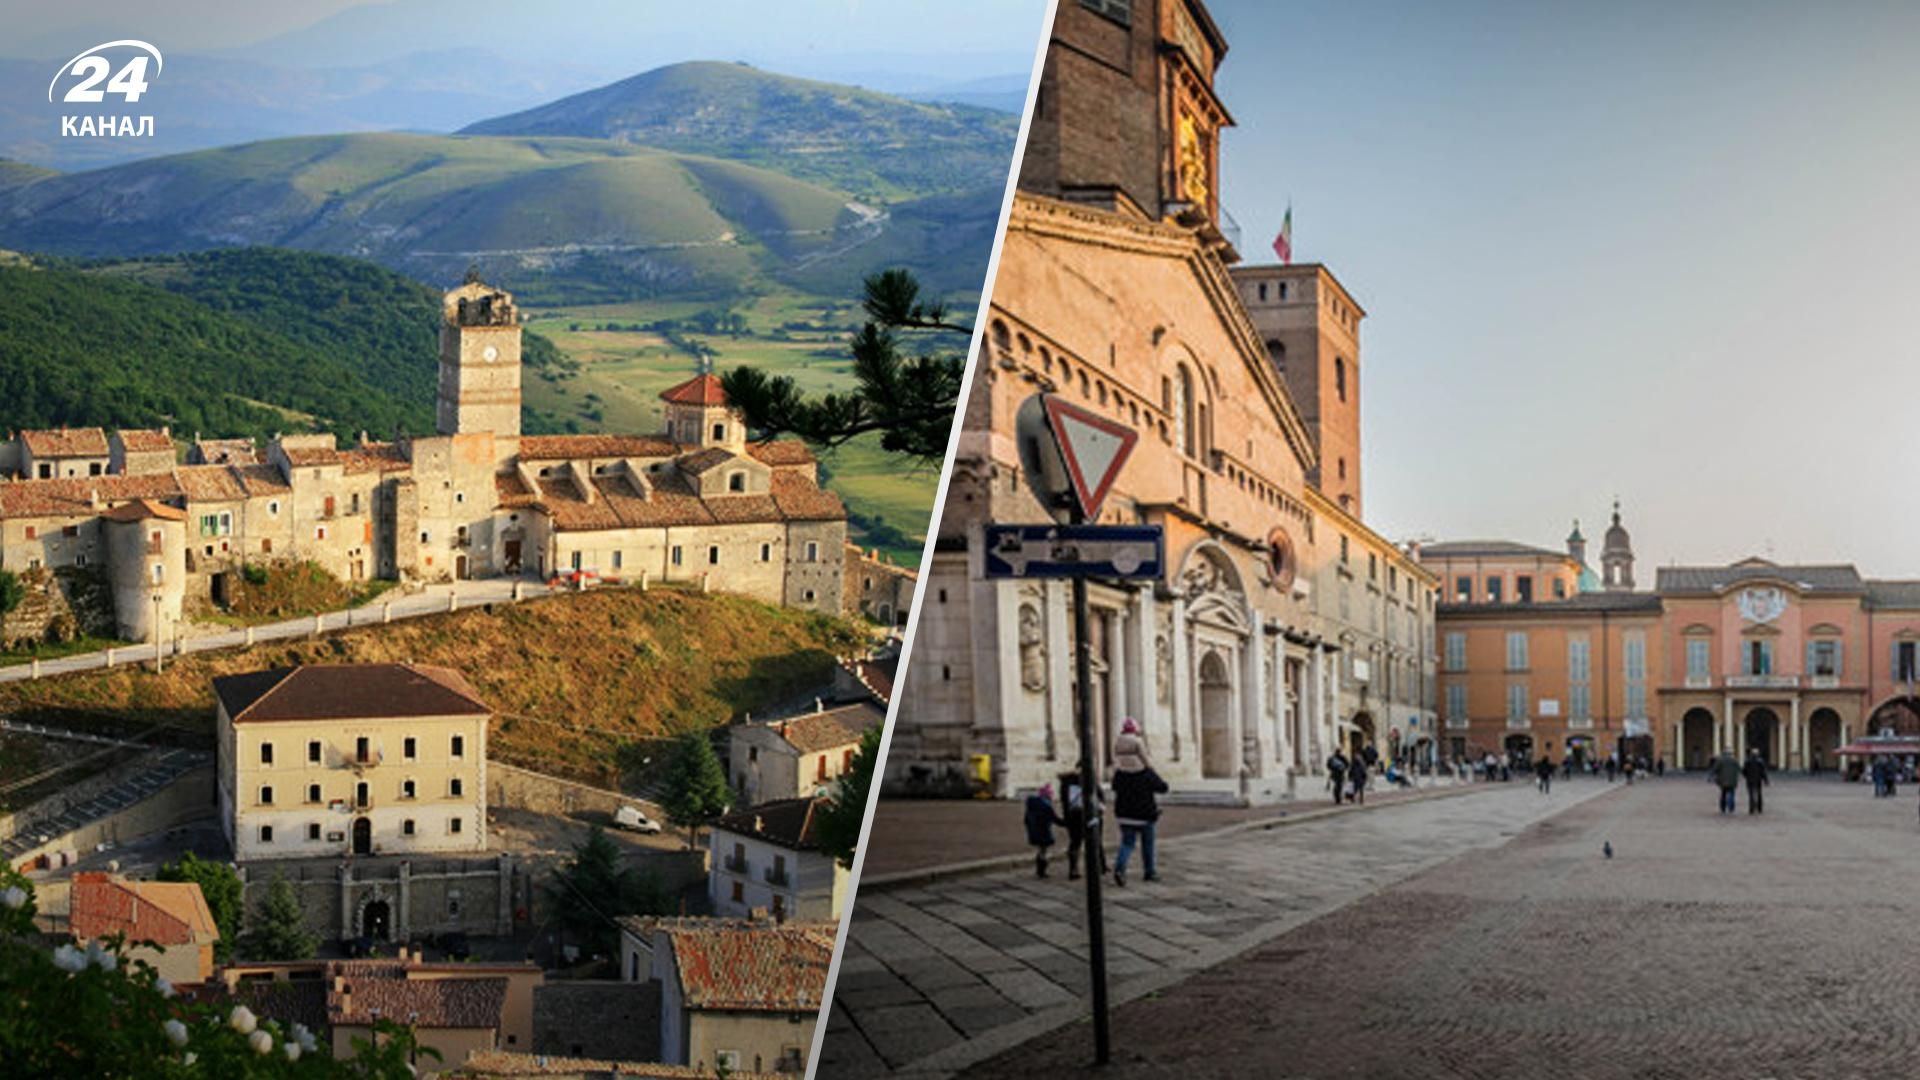 25 італійських муніципалітетів пропонують будинки по 1 євро - Нерухомість